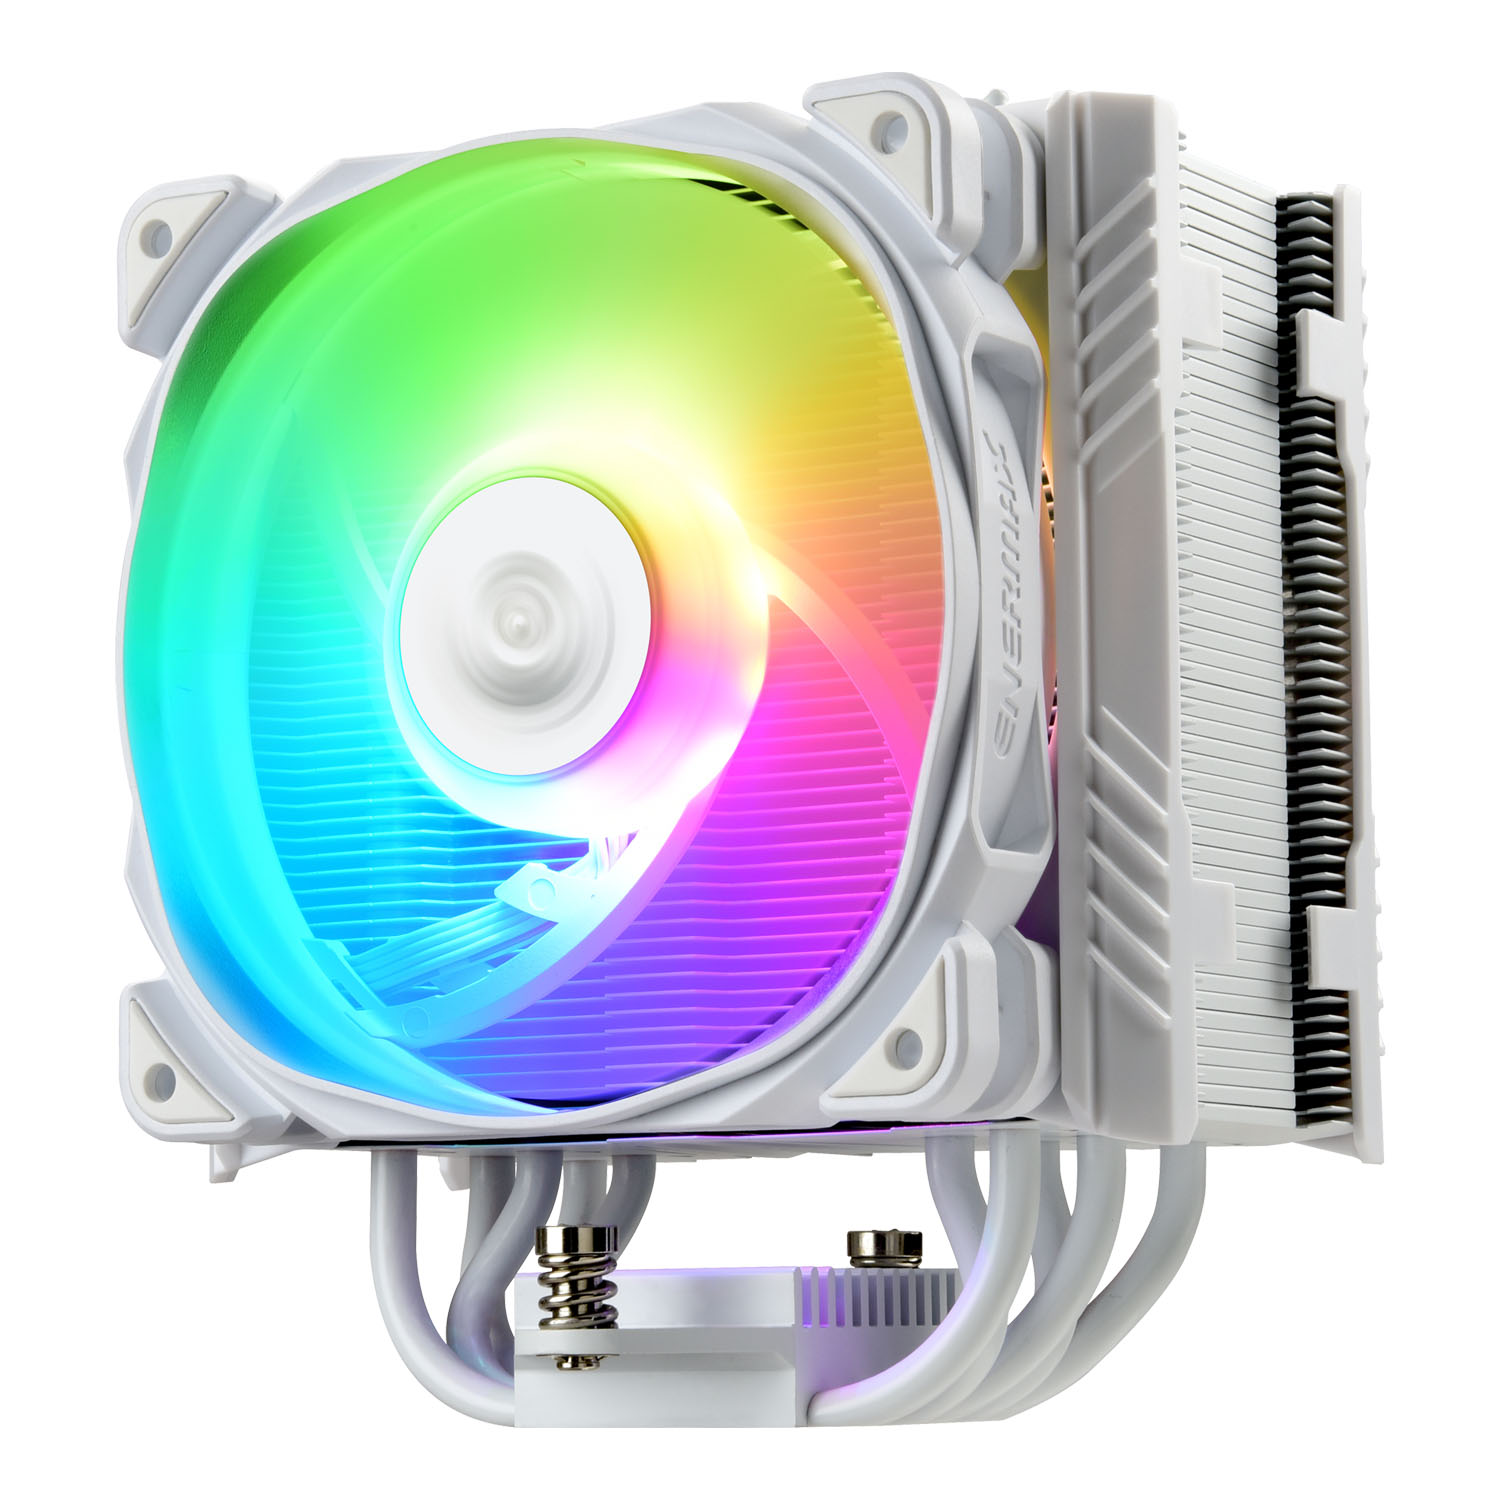 Enermax ETS-T50A W ARGB CPU-Kühler für AMD und Intel mit ARGB 120mm Lüfter, weiß